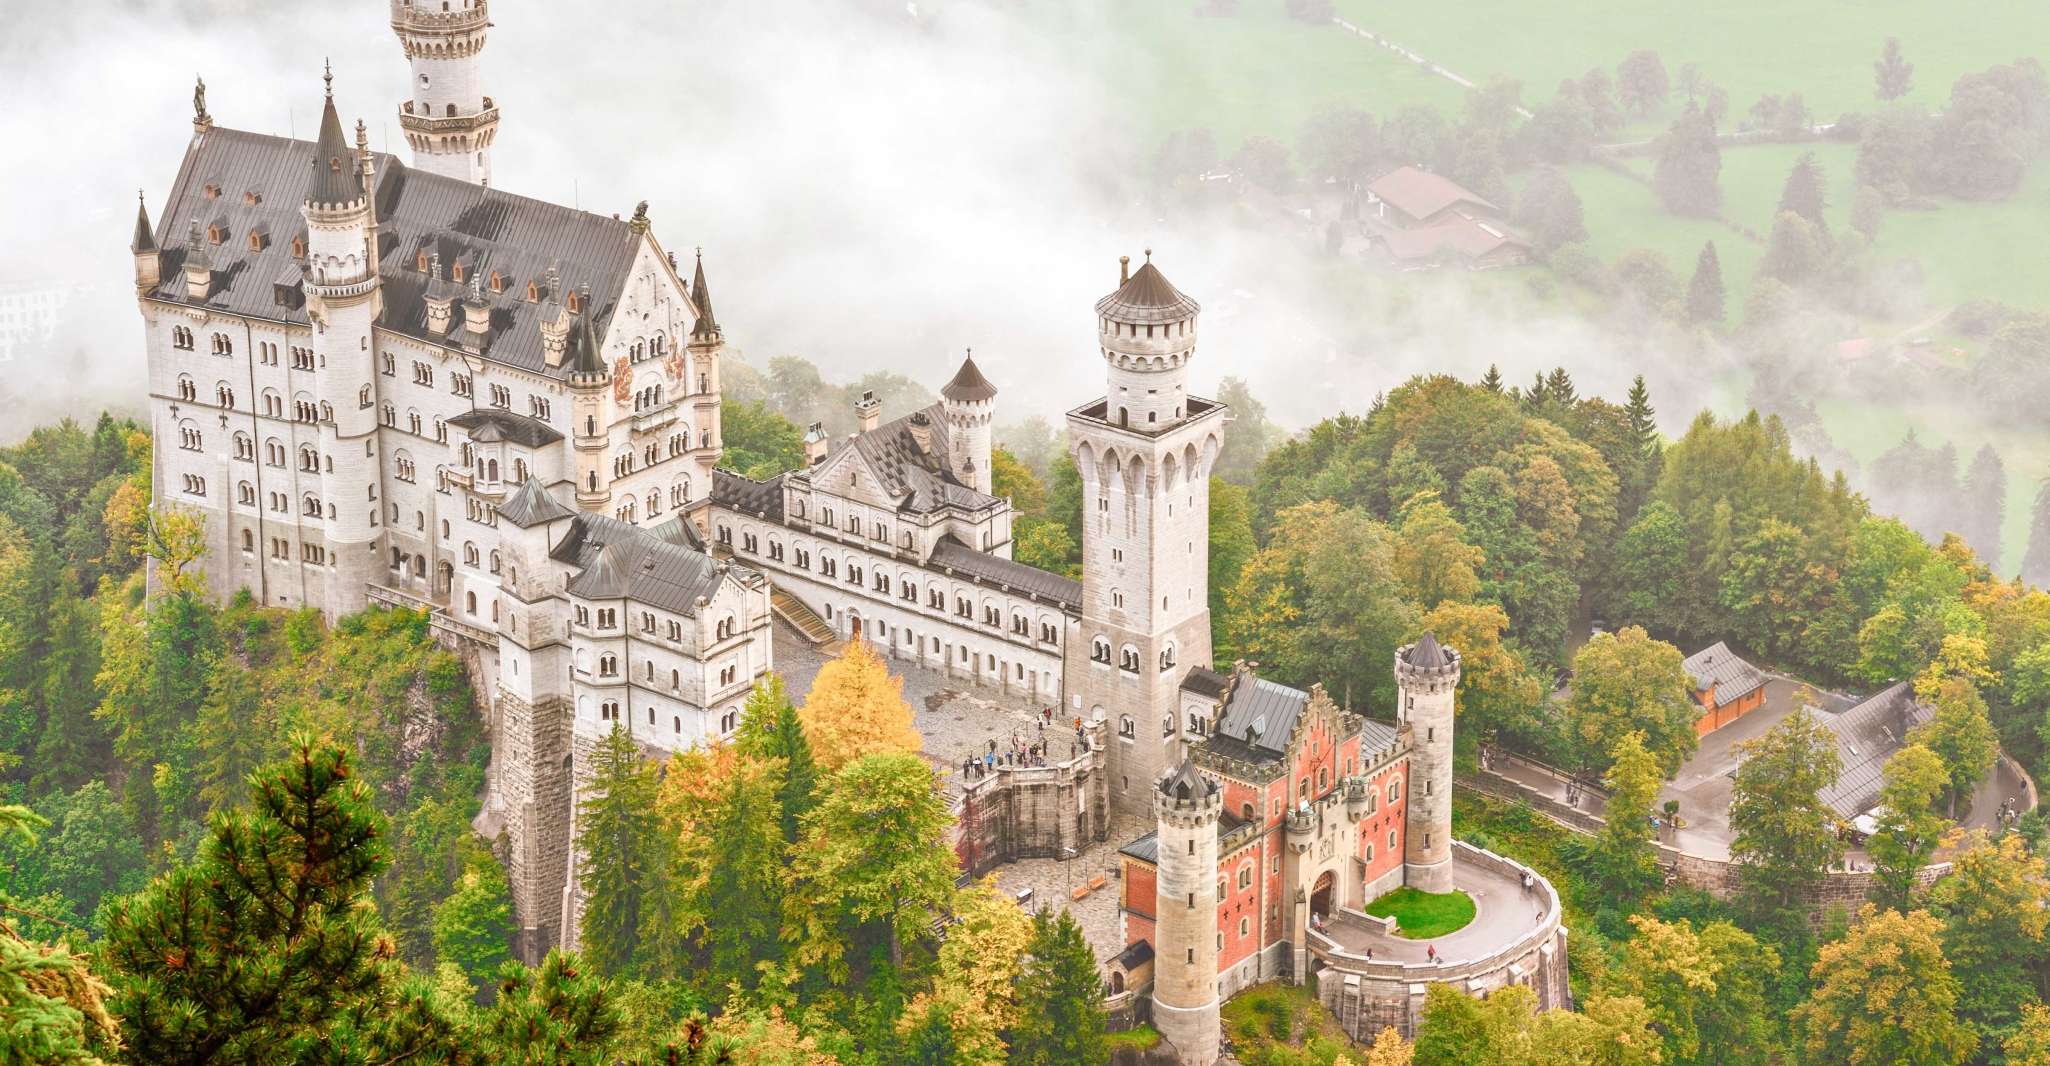 From Hohenschwangau, Tour to Neuschwanstein Castle - Housity